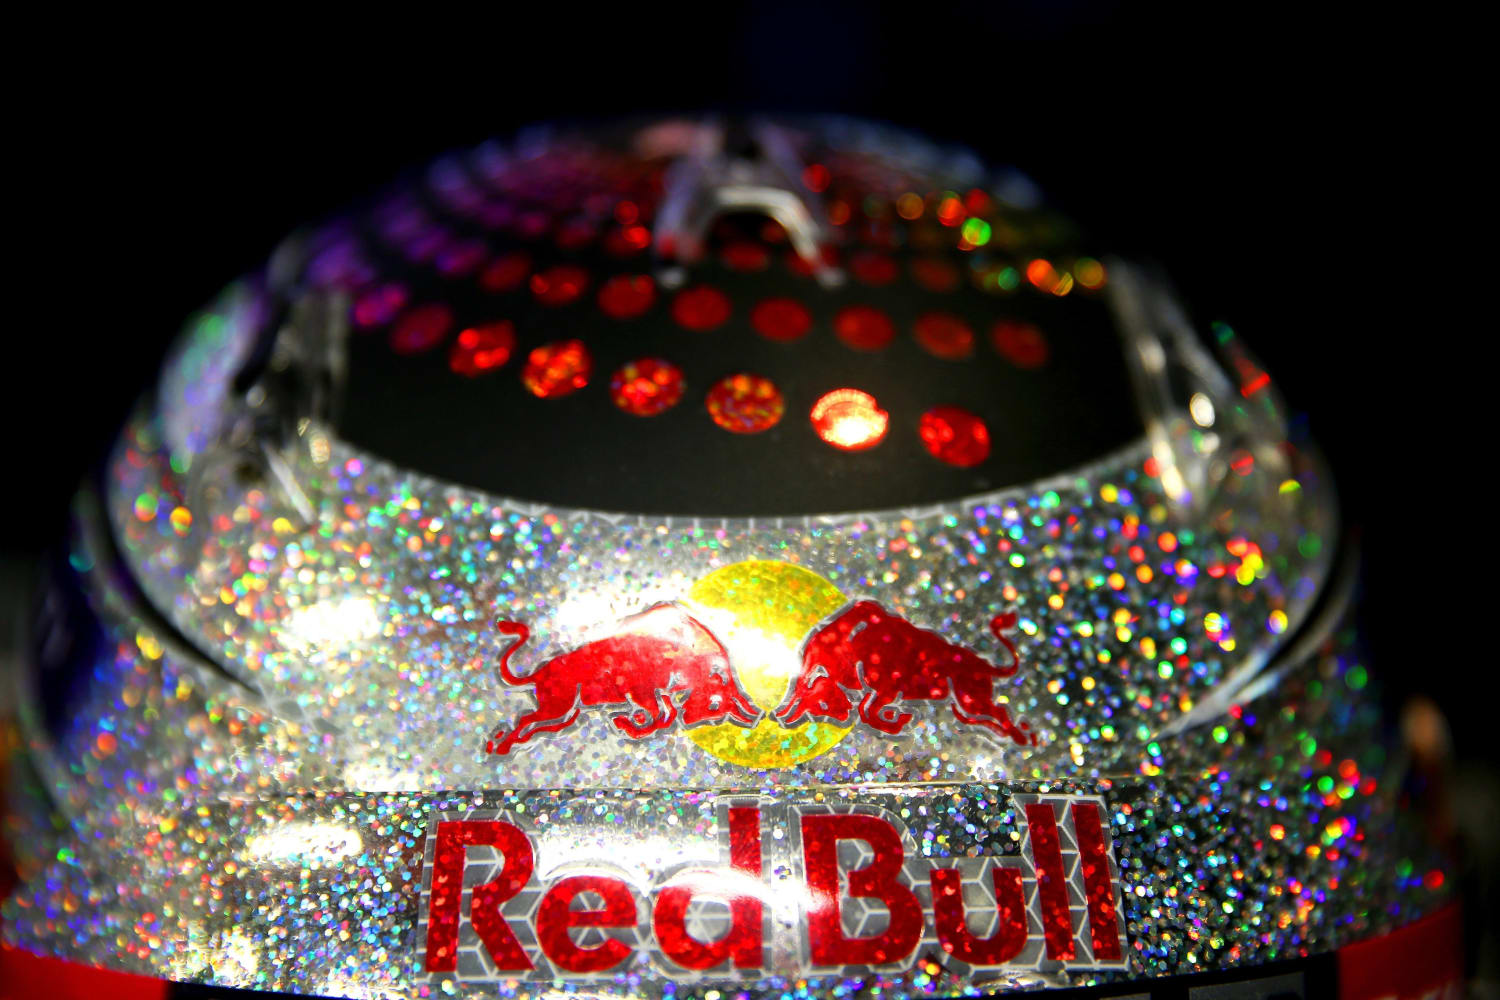 Sebastian Vettel's 2013 designs